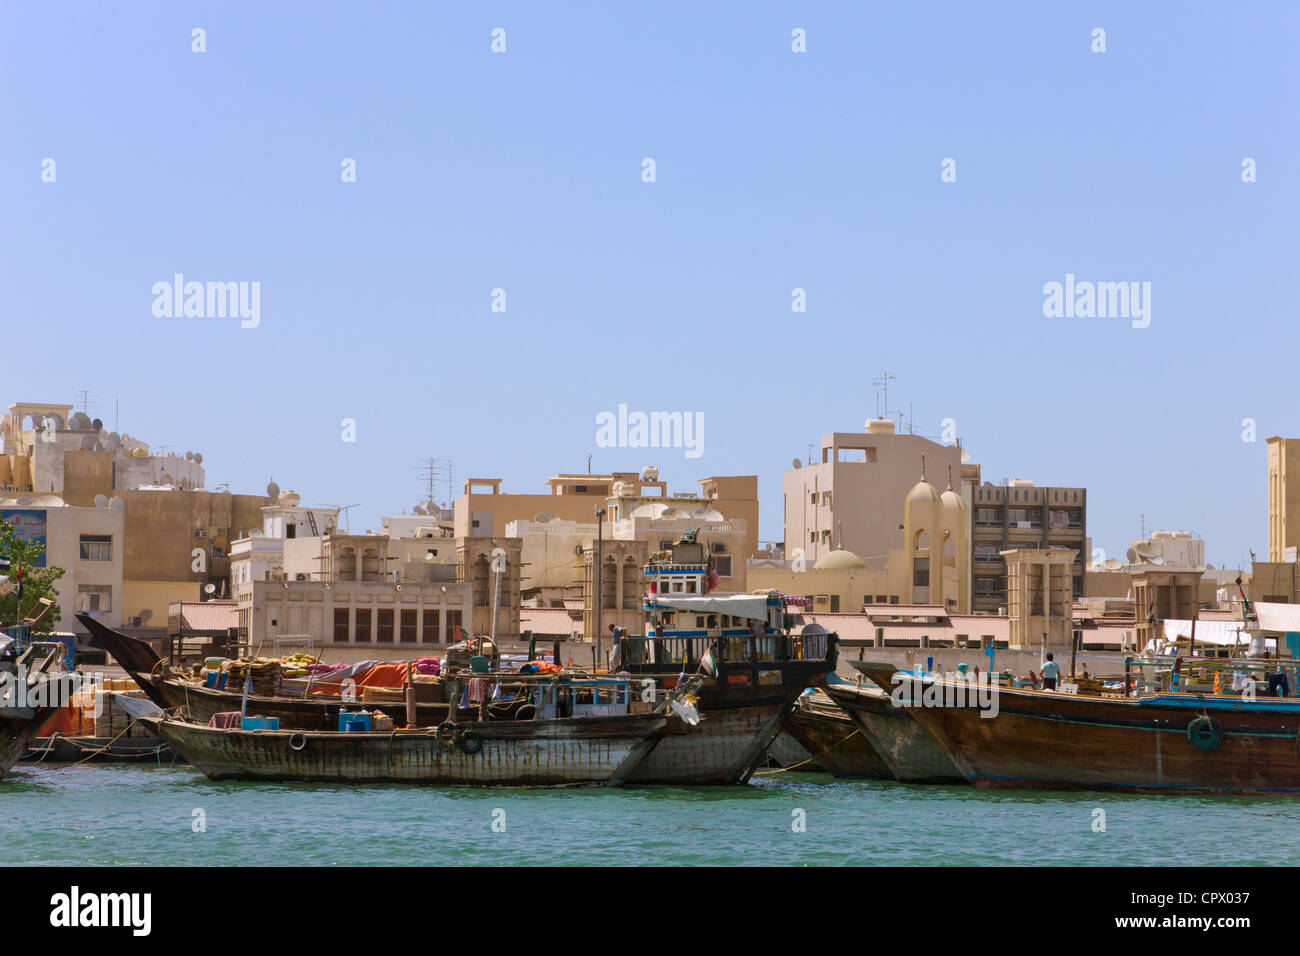 Boats on Khor Dubai (Dubai Creek), Dubai, UAE Stock Photo